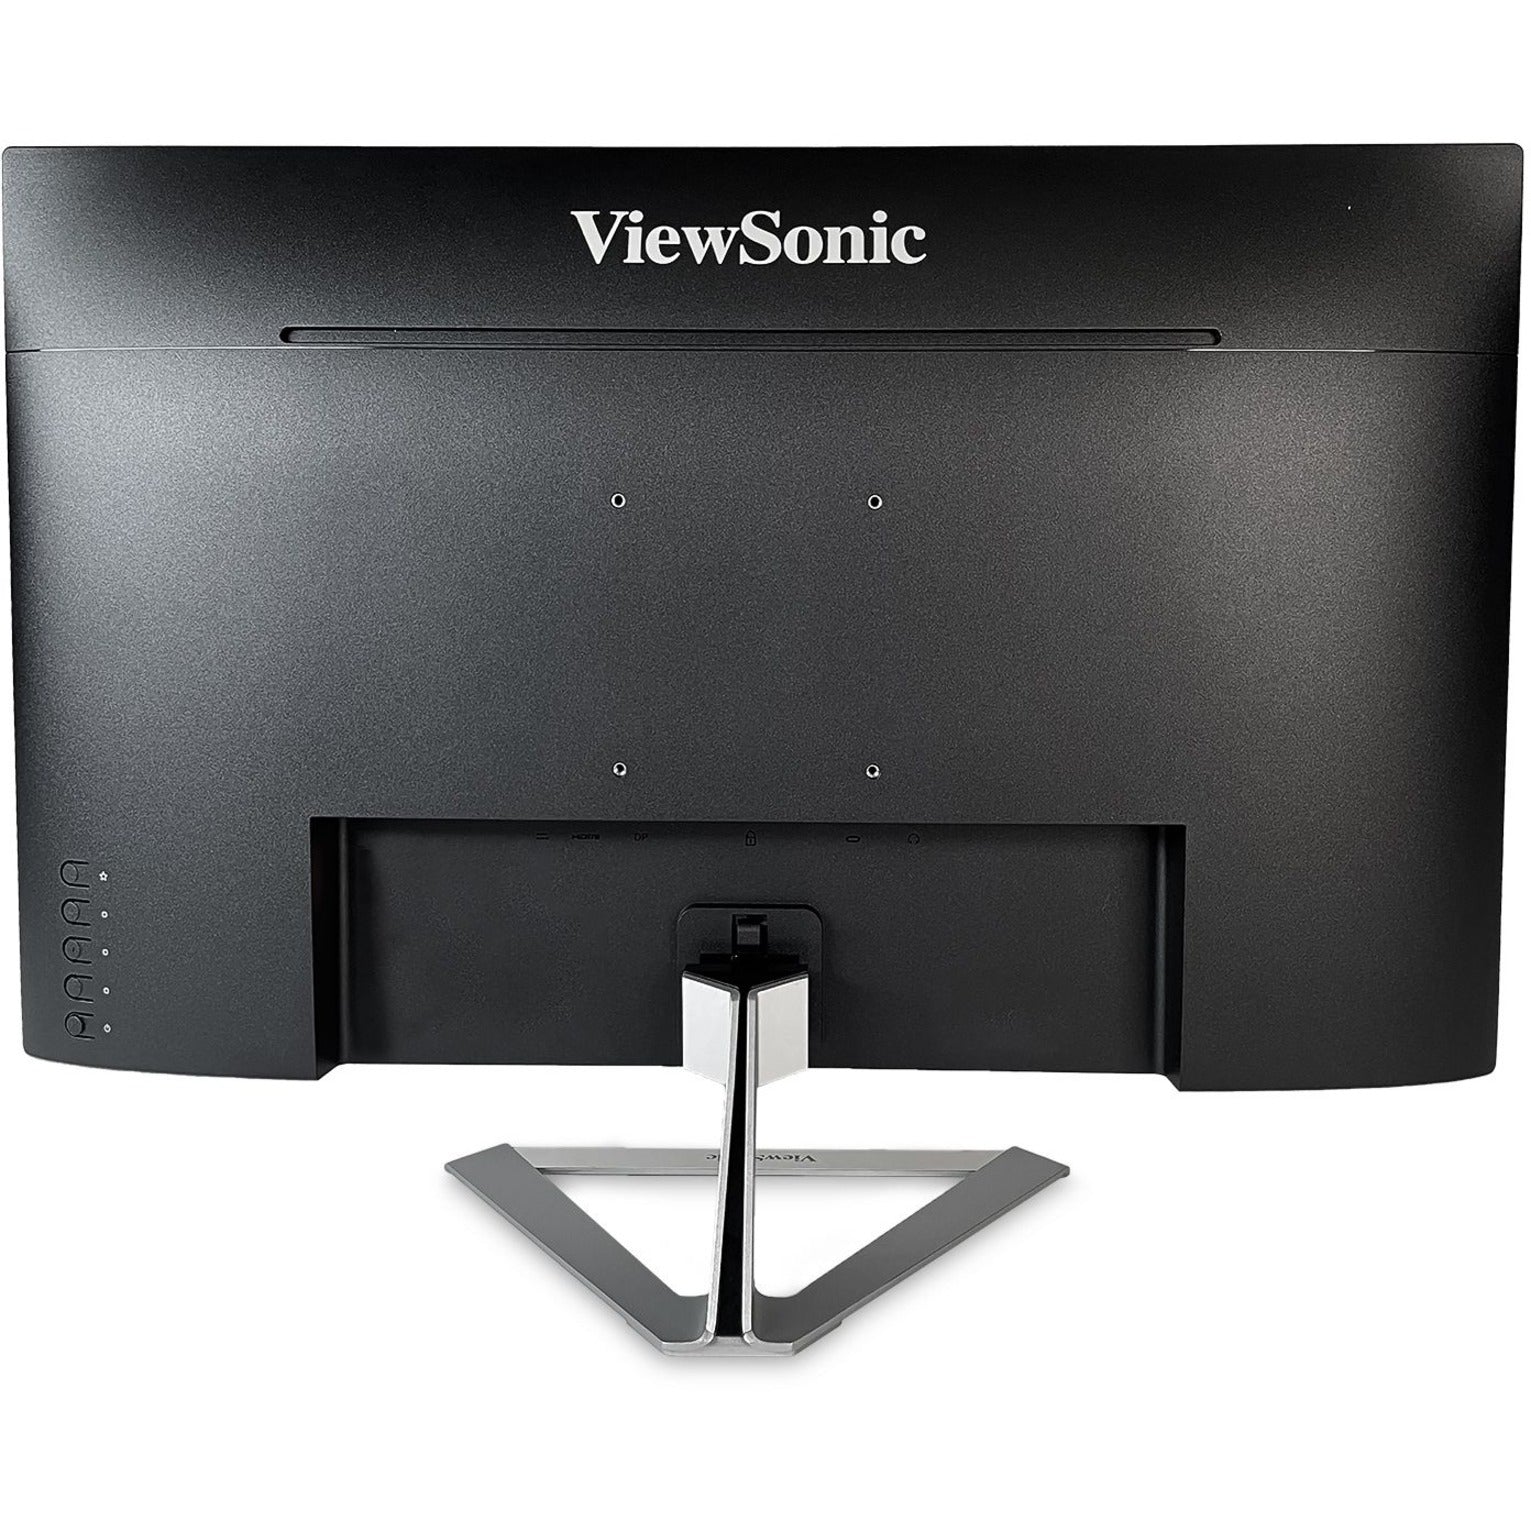 شاشة ViewSonic VX2776-4K-MHDU 27 بوصة 4K UHD نحيفة الحافة IPS مع USB-C، HDMI، و DisplayPort، زمن الاستجابة 1 مللي ثانية، سطوع 350 نيت، 1.07 مليار لون - العلامة التجارية: ViewSonic